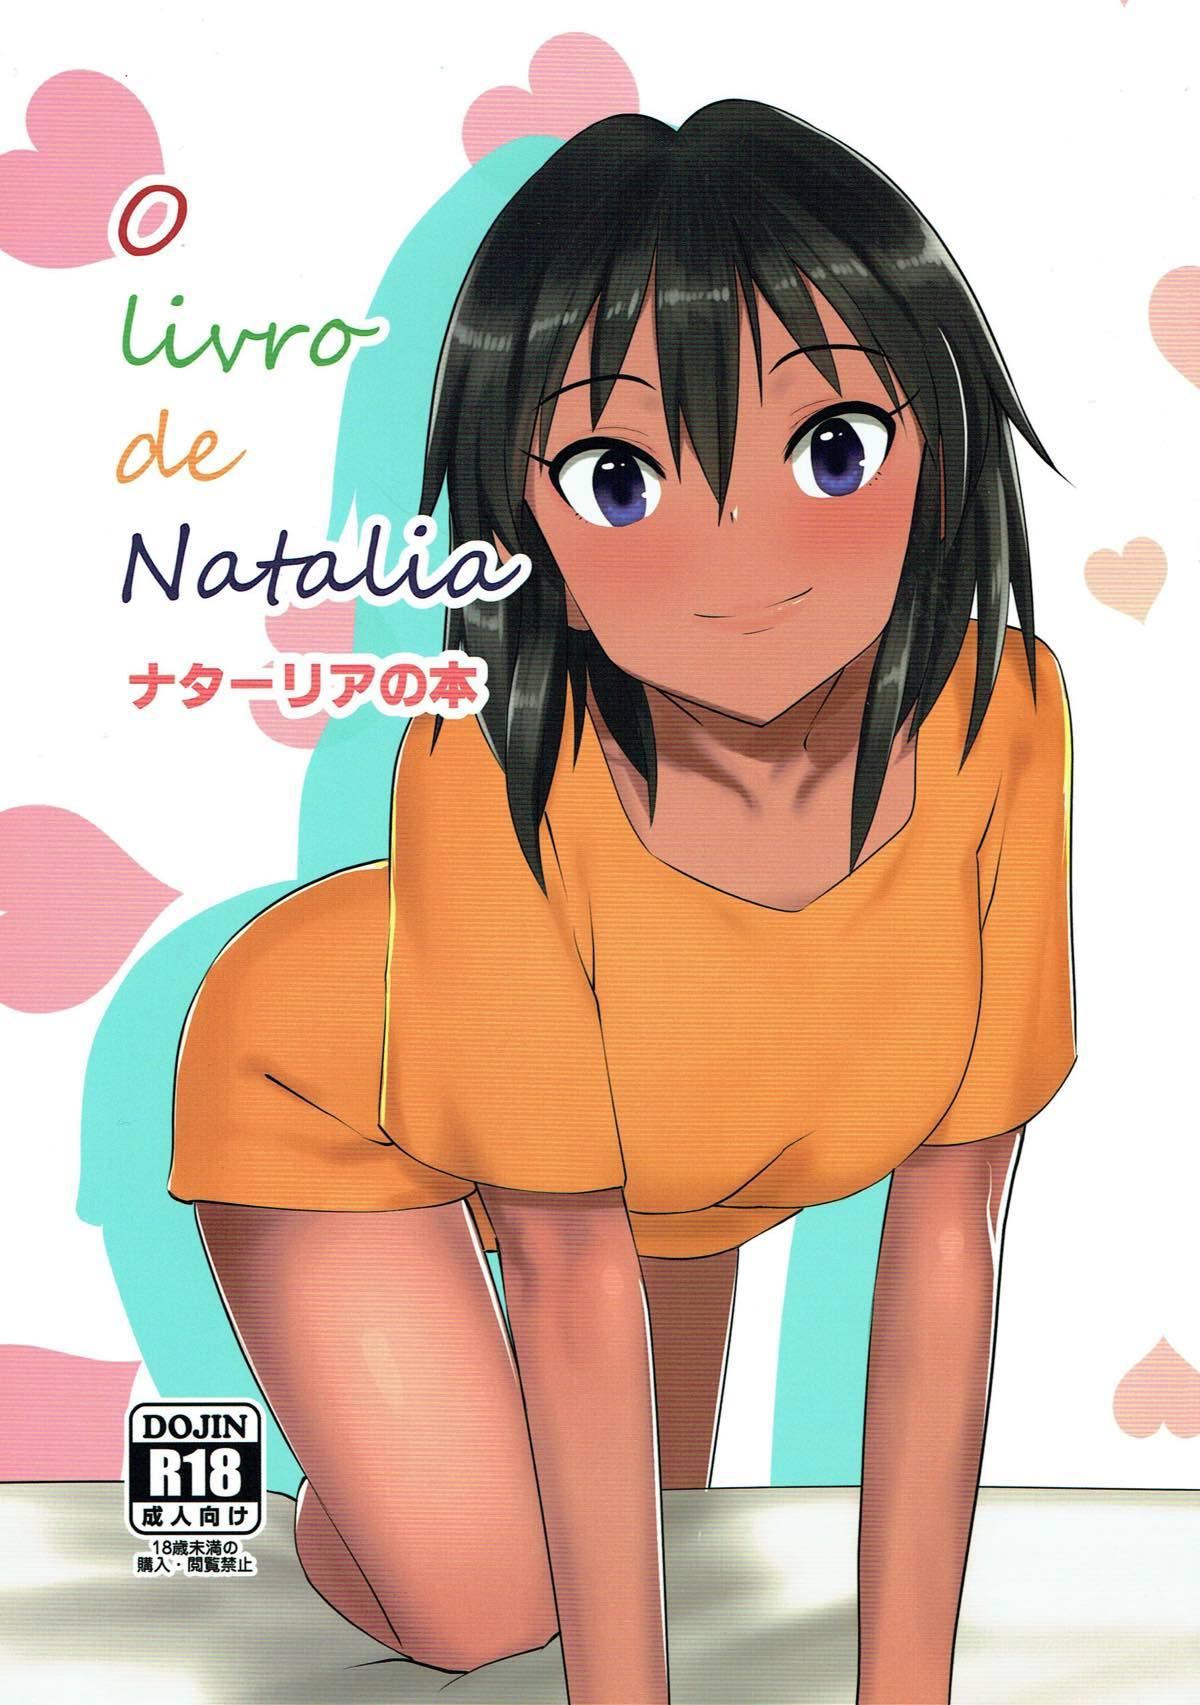 O livro de Natalia - Natalia no Hon 0